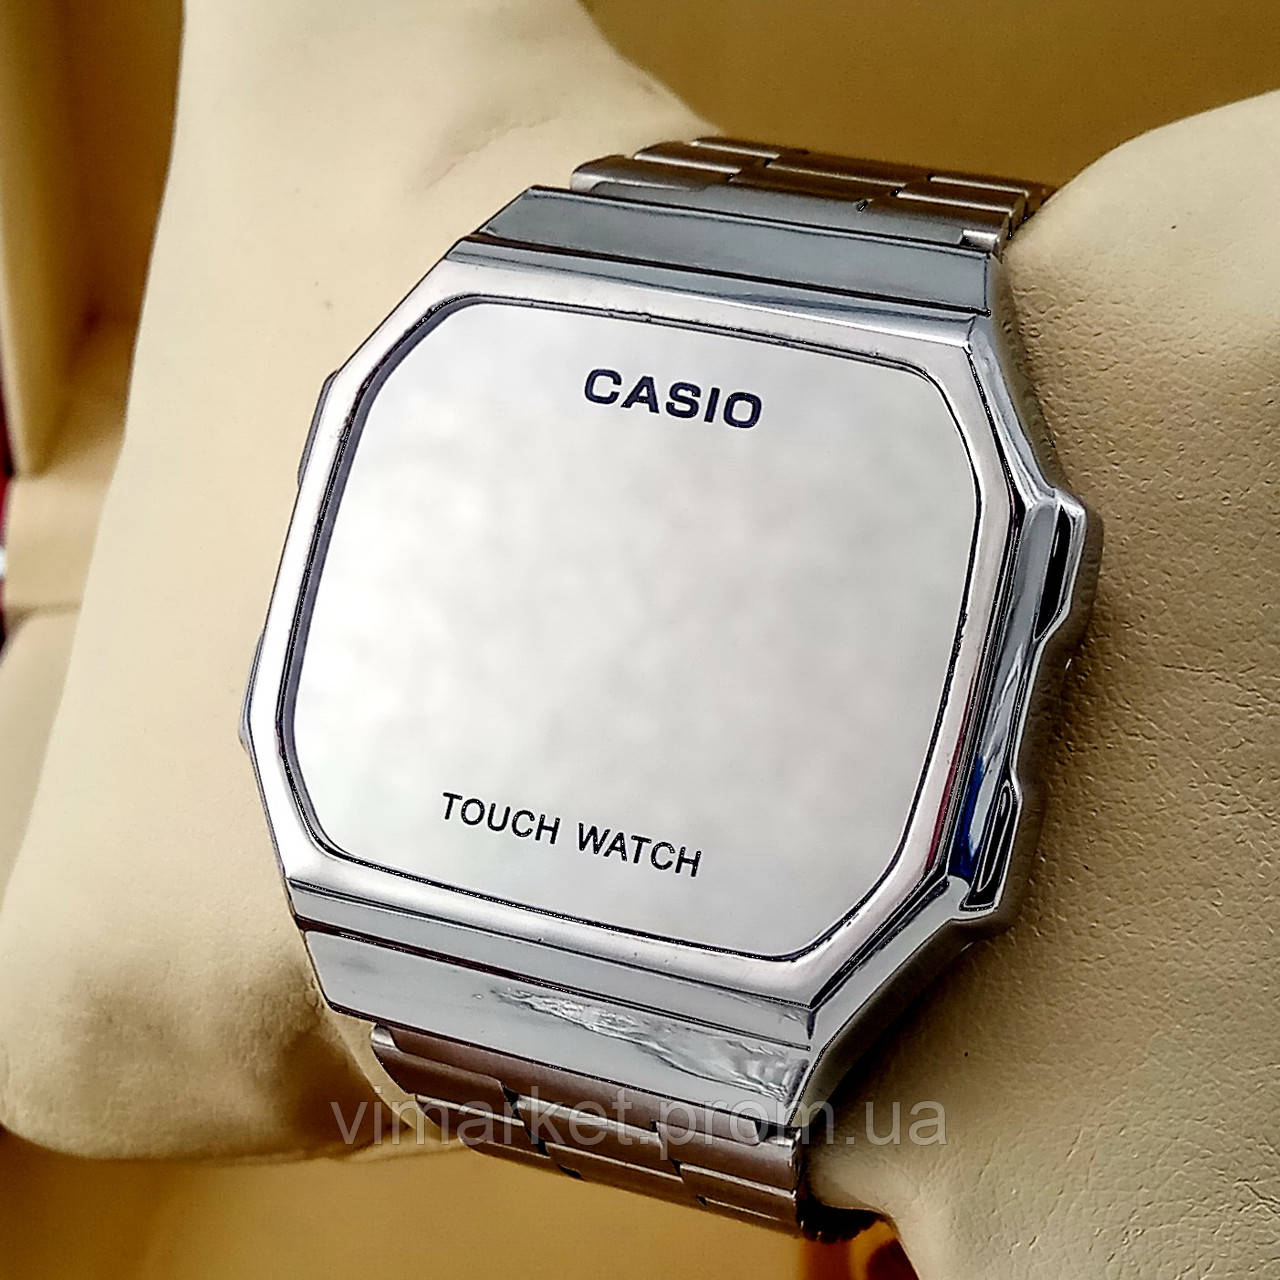 Сенсорний кварцовий (електронний) наручний годинник Casio A168 Touch Watch сріблястого кольору AAA якості